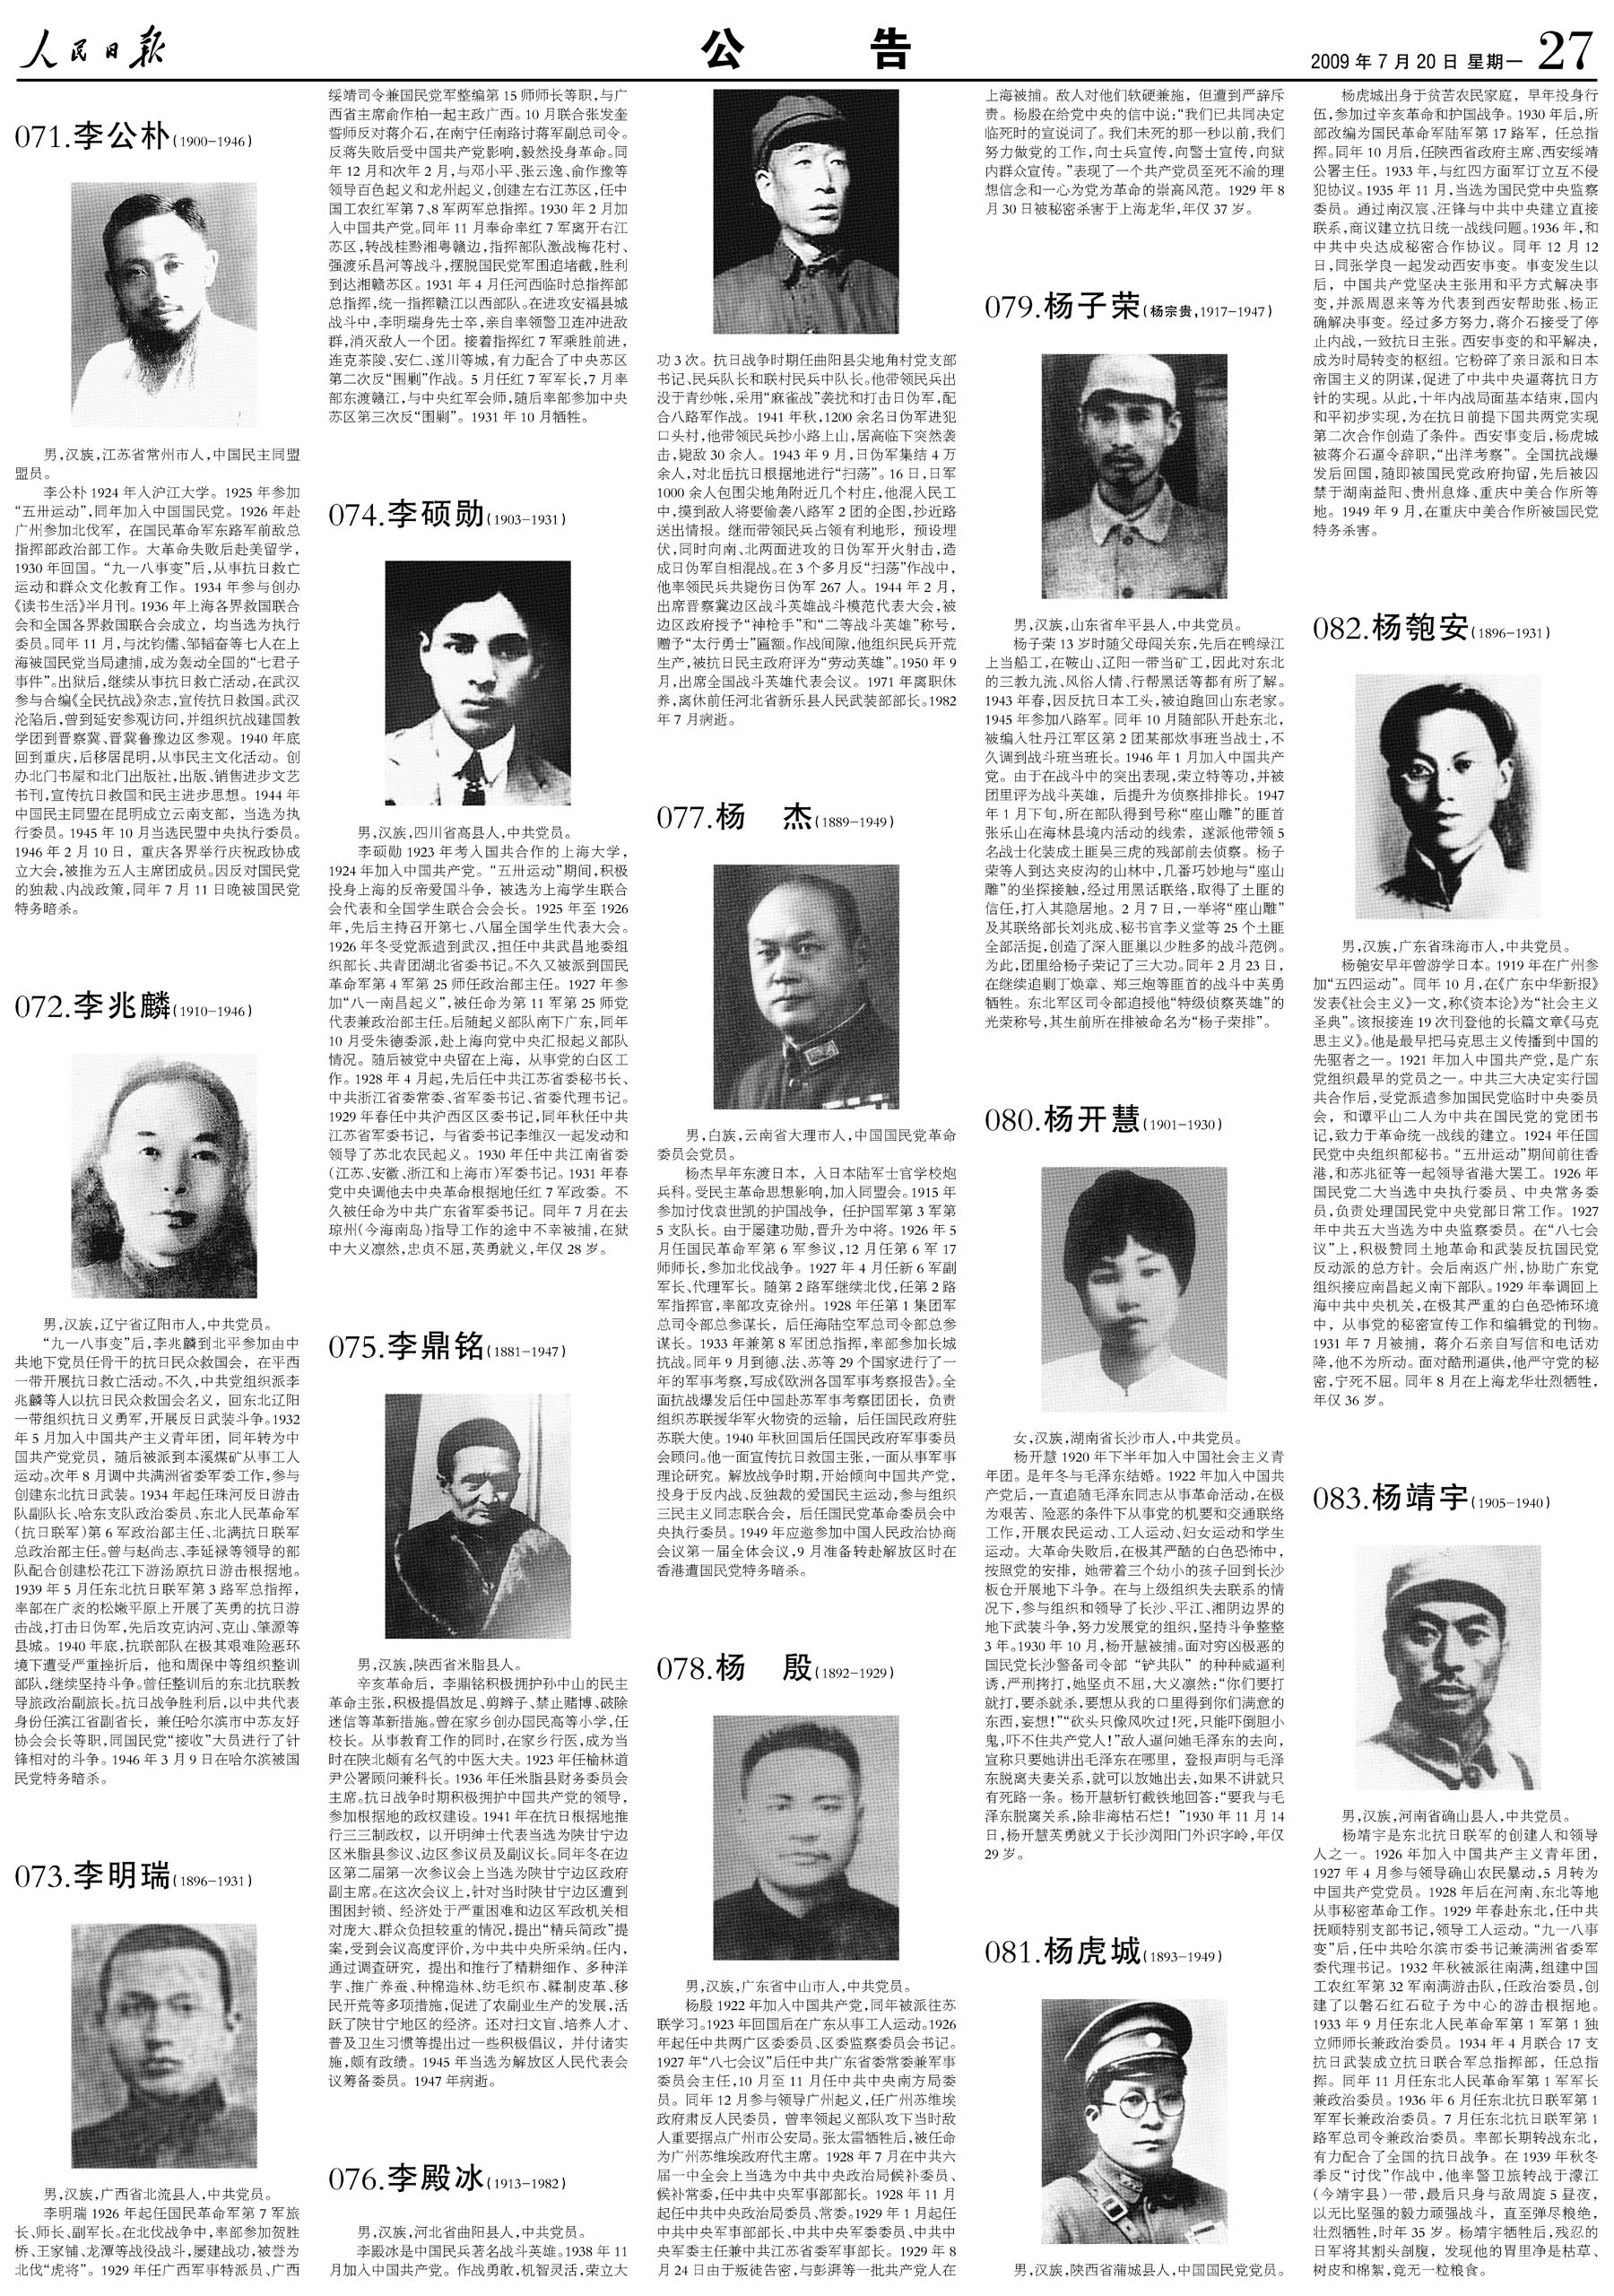 100位为新中国成立作出突出贡献的英雄模范人物和 100位新中国成立